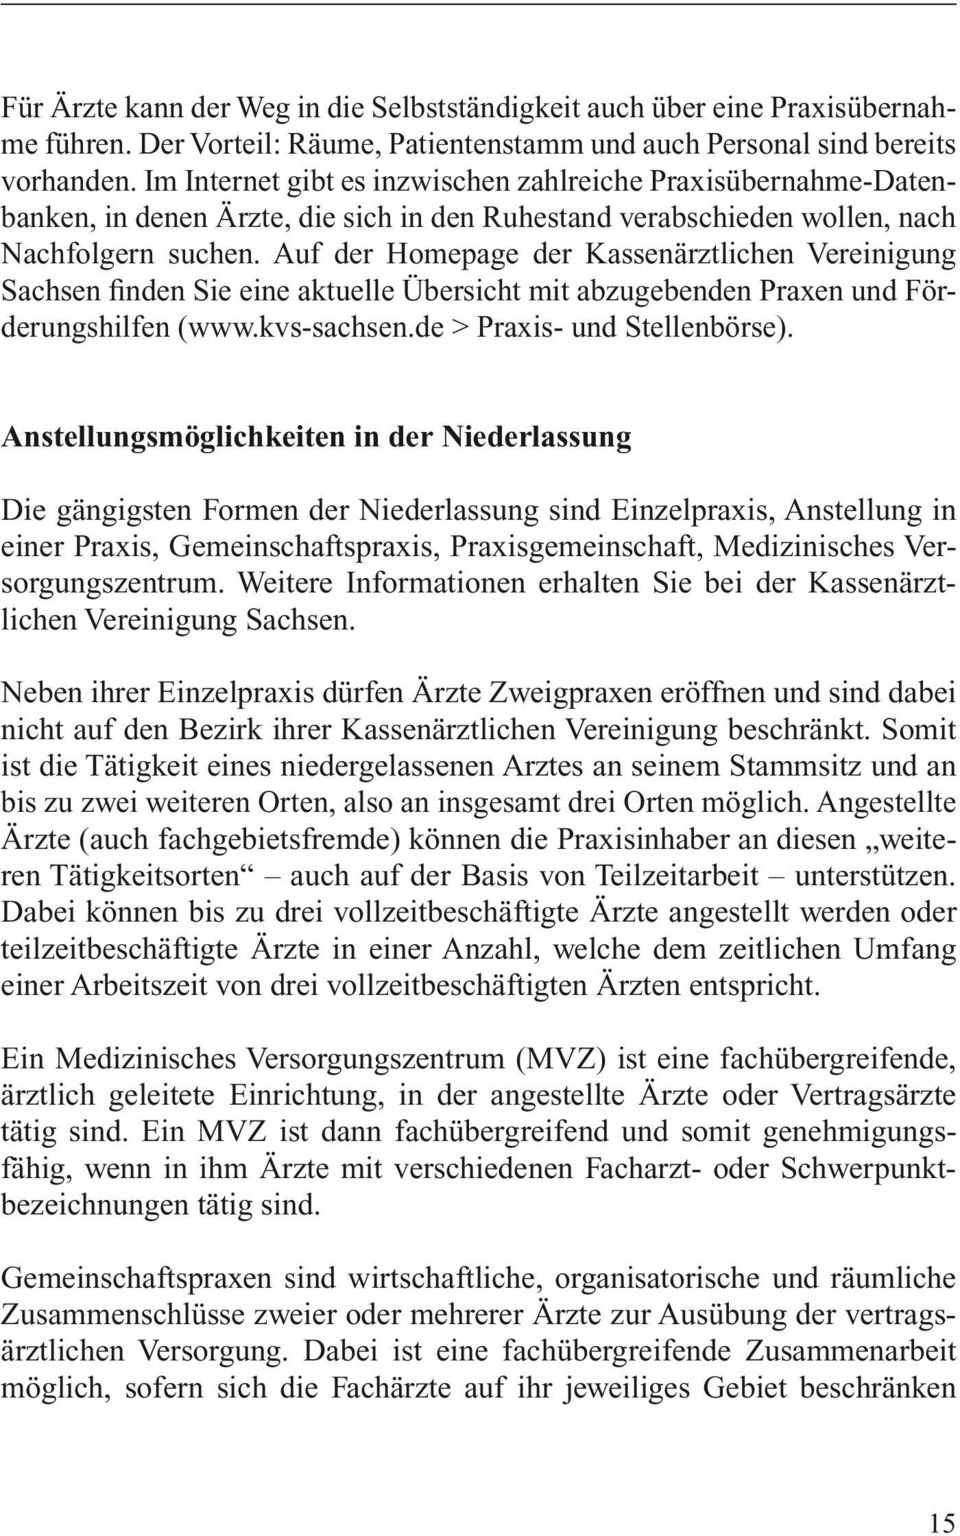 Auf der Homepage der Kassenärztlichen Vereinigung Sachsen finden Sie eine aktuelle Übersicht mit abzugebenden Praxen und Förderungshilfen (www.kvs-sachsen.de > Praxis- und Stellenbörse).